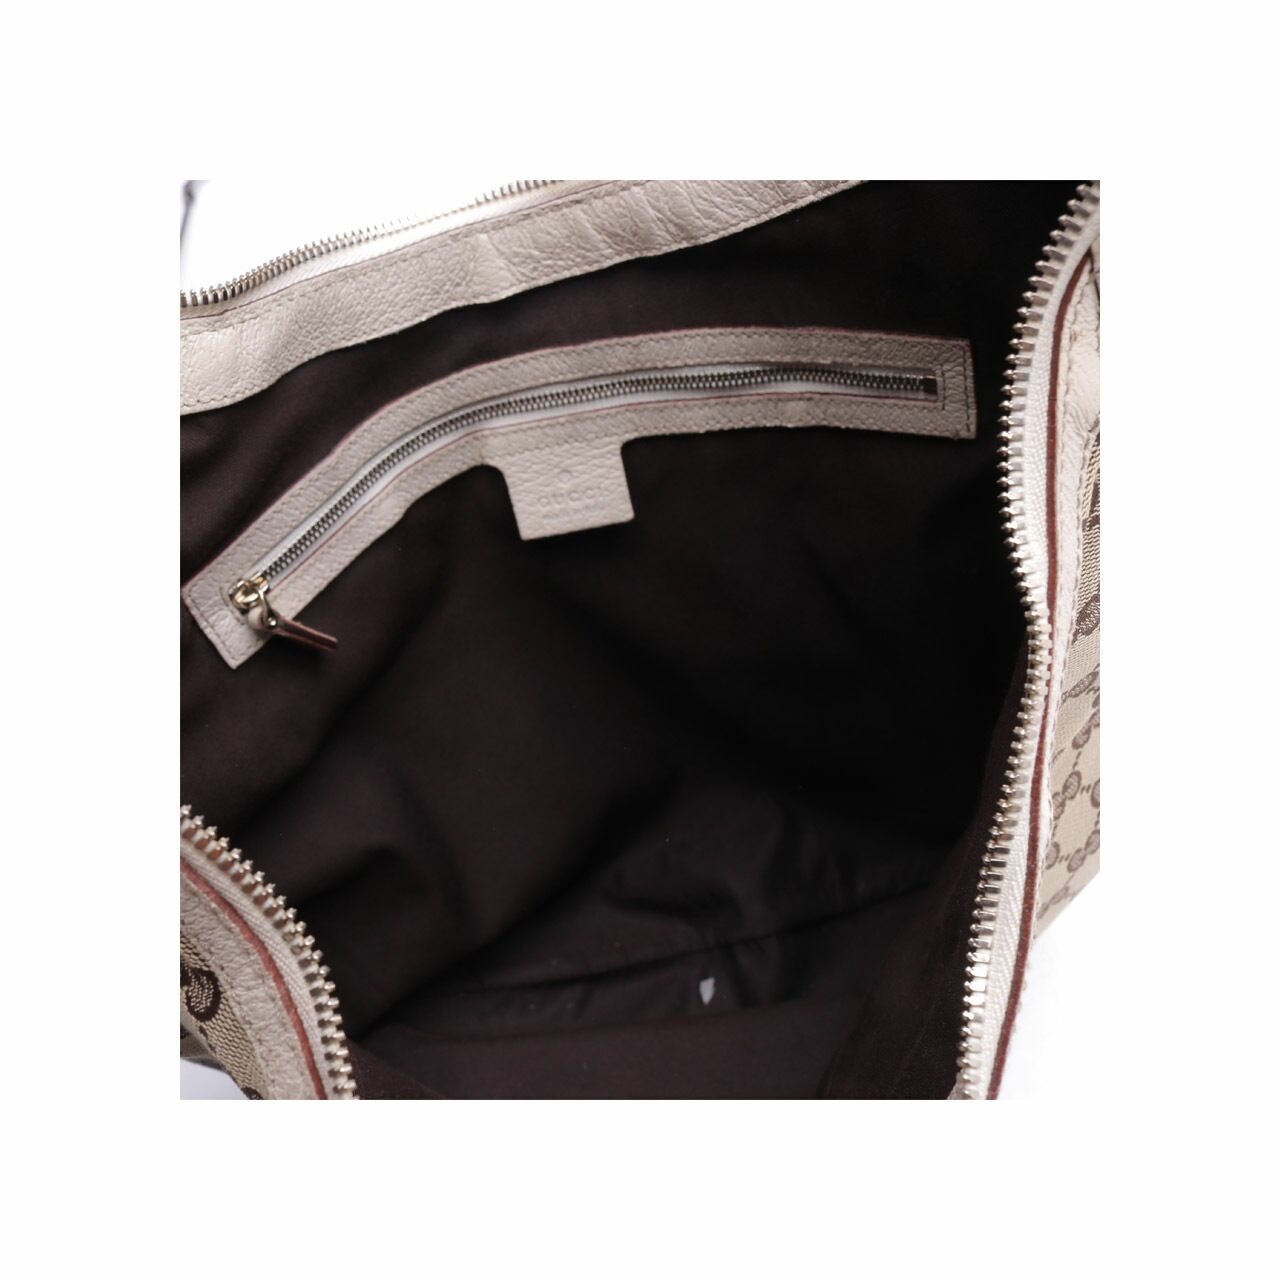 Gucci Monogram GG Web Large Buckle Beige Canvas Hobo Shoulder Bag